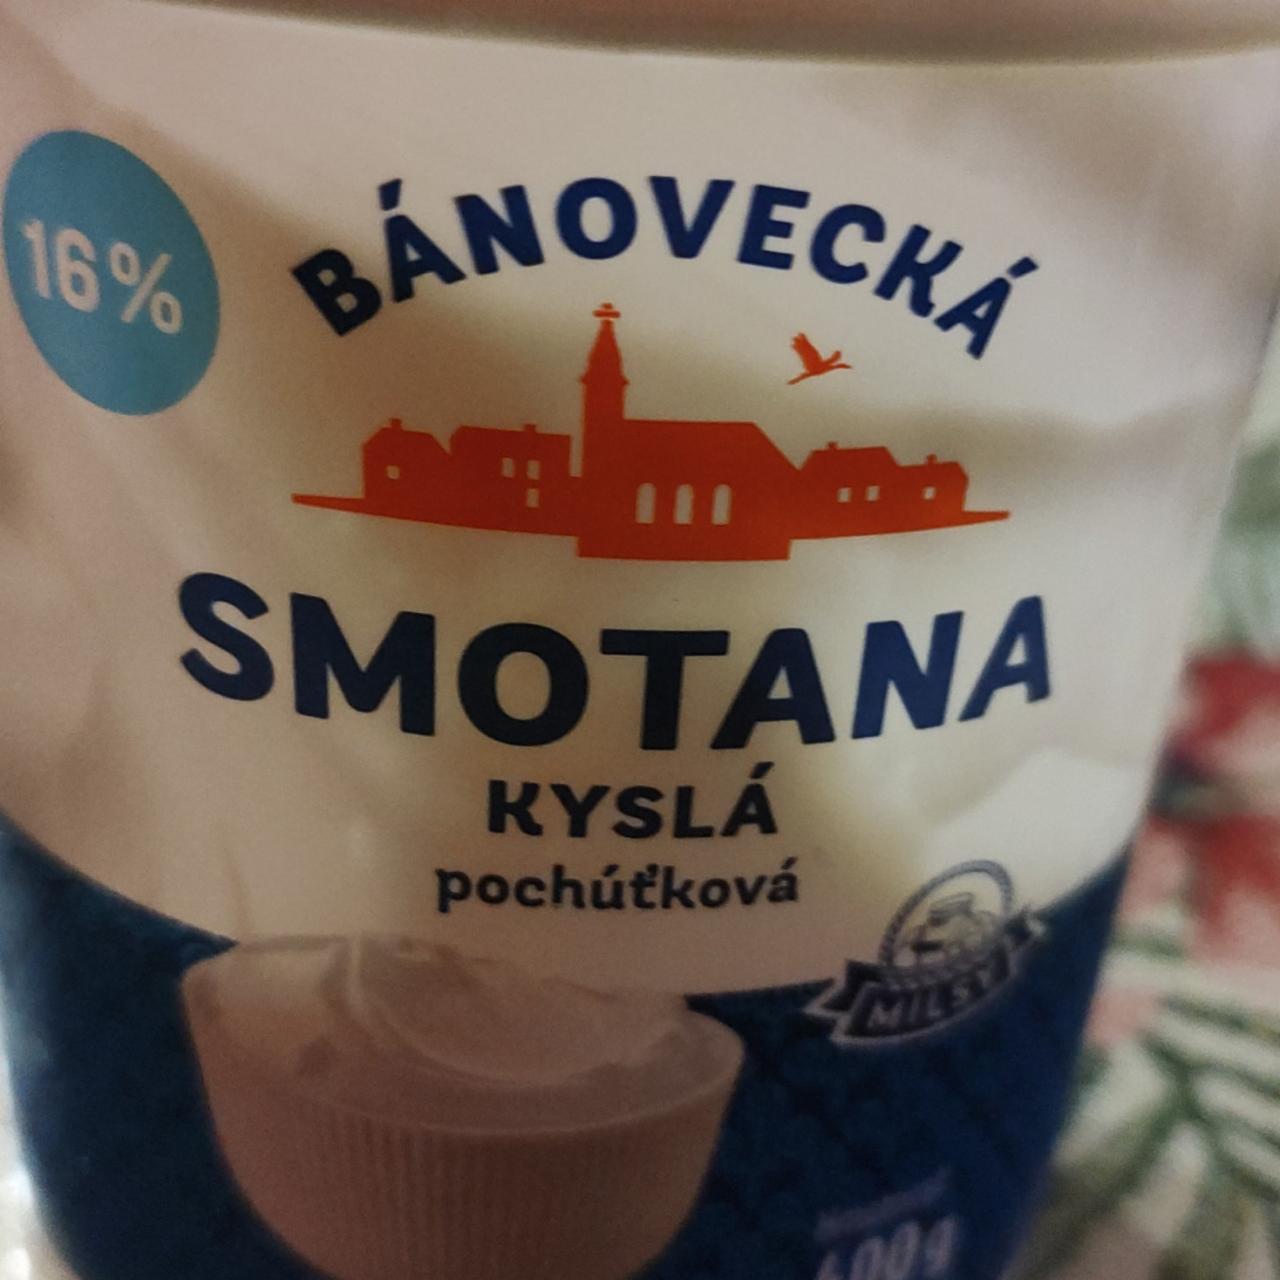 Fotografie - Bánovecká Smotana kyslá pochúťková 16% Milsy